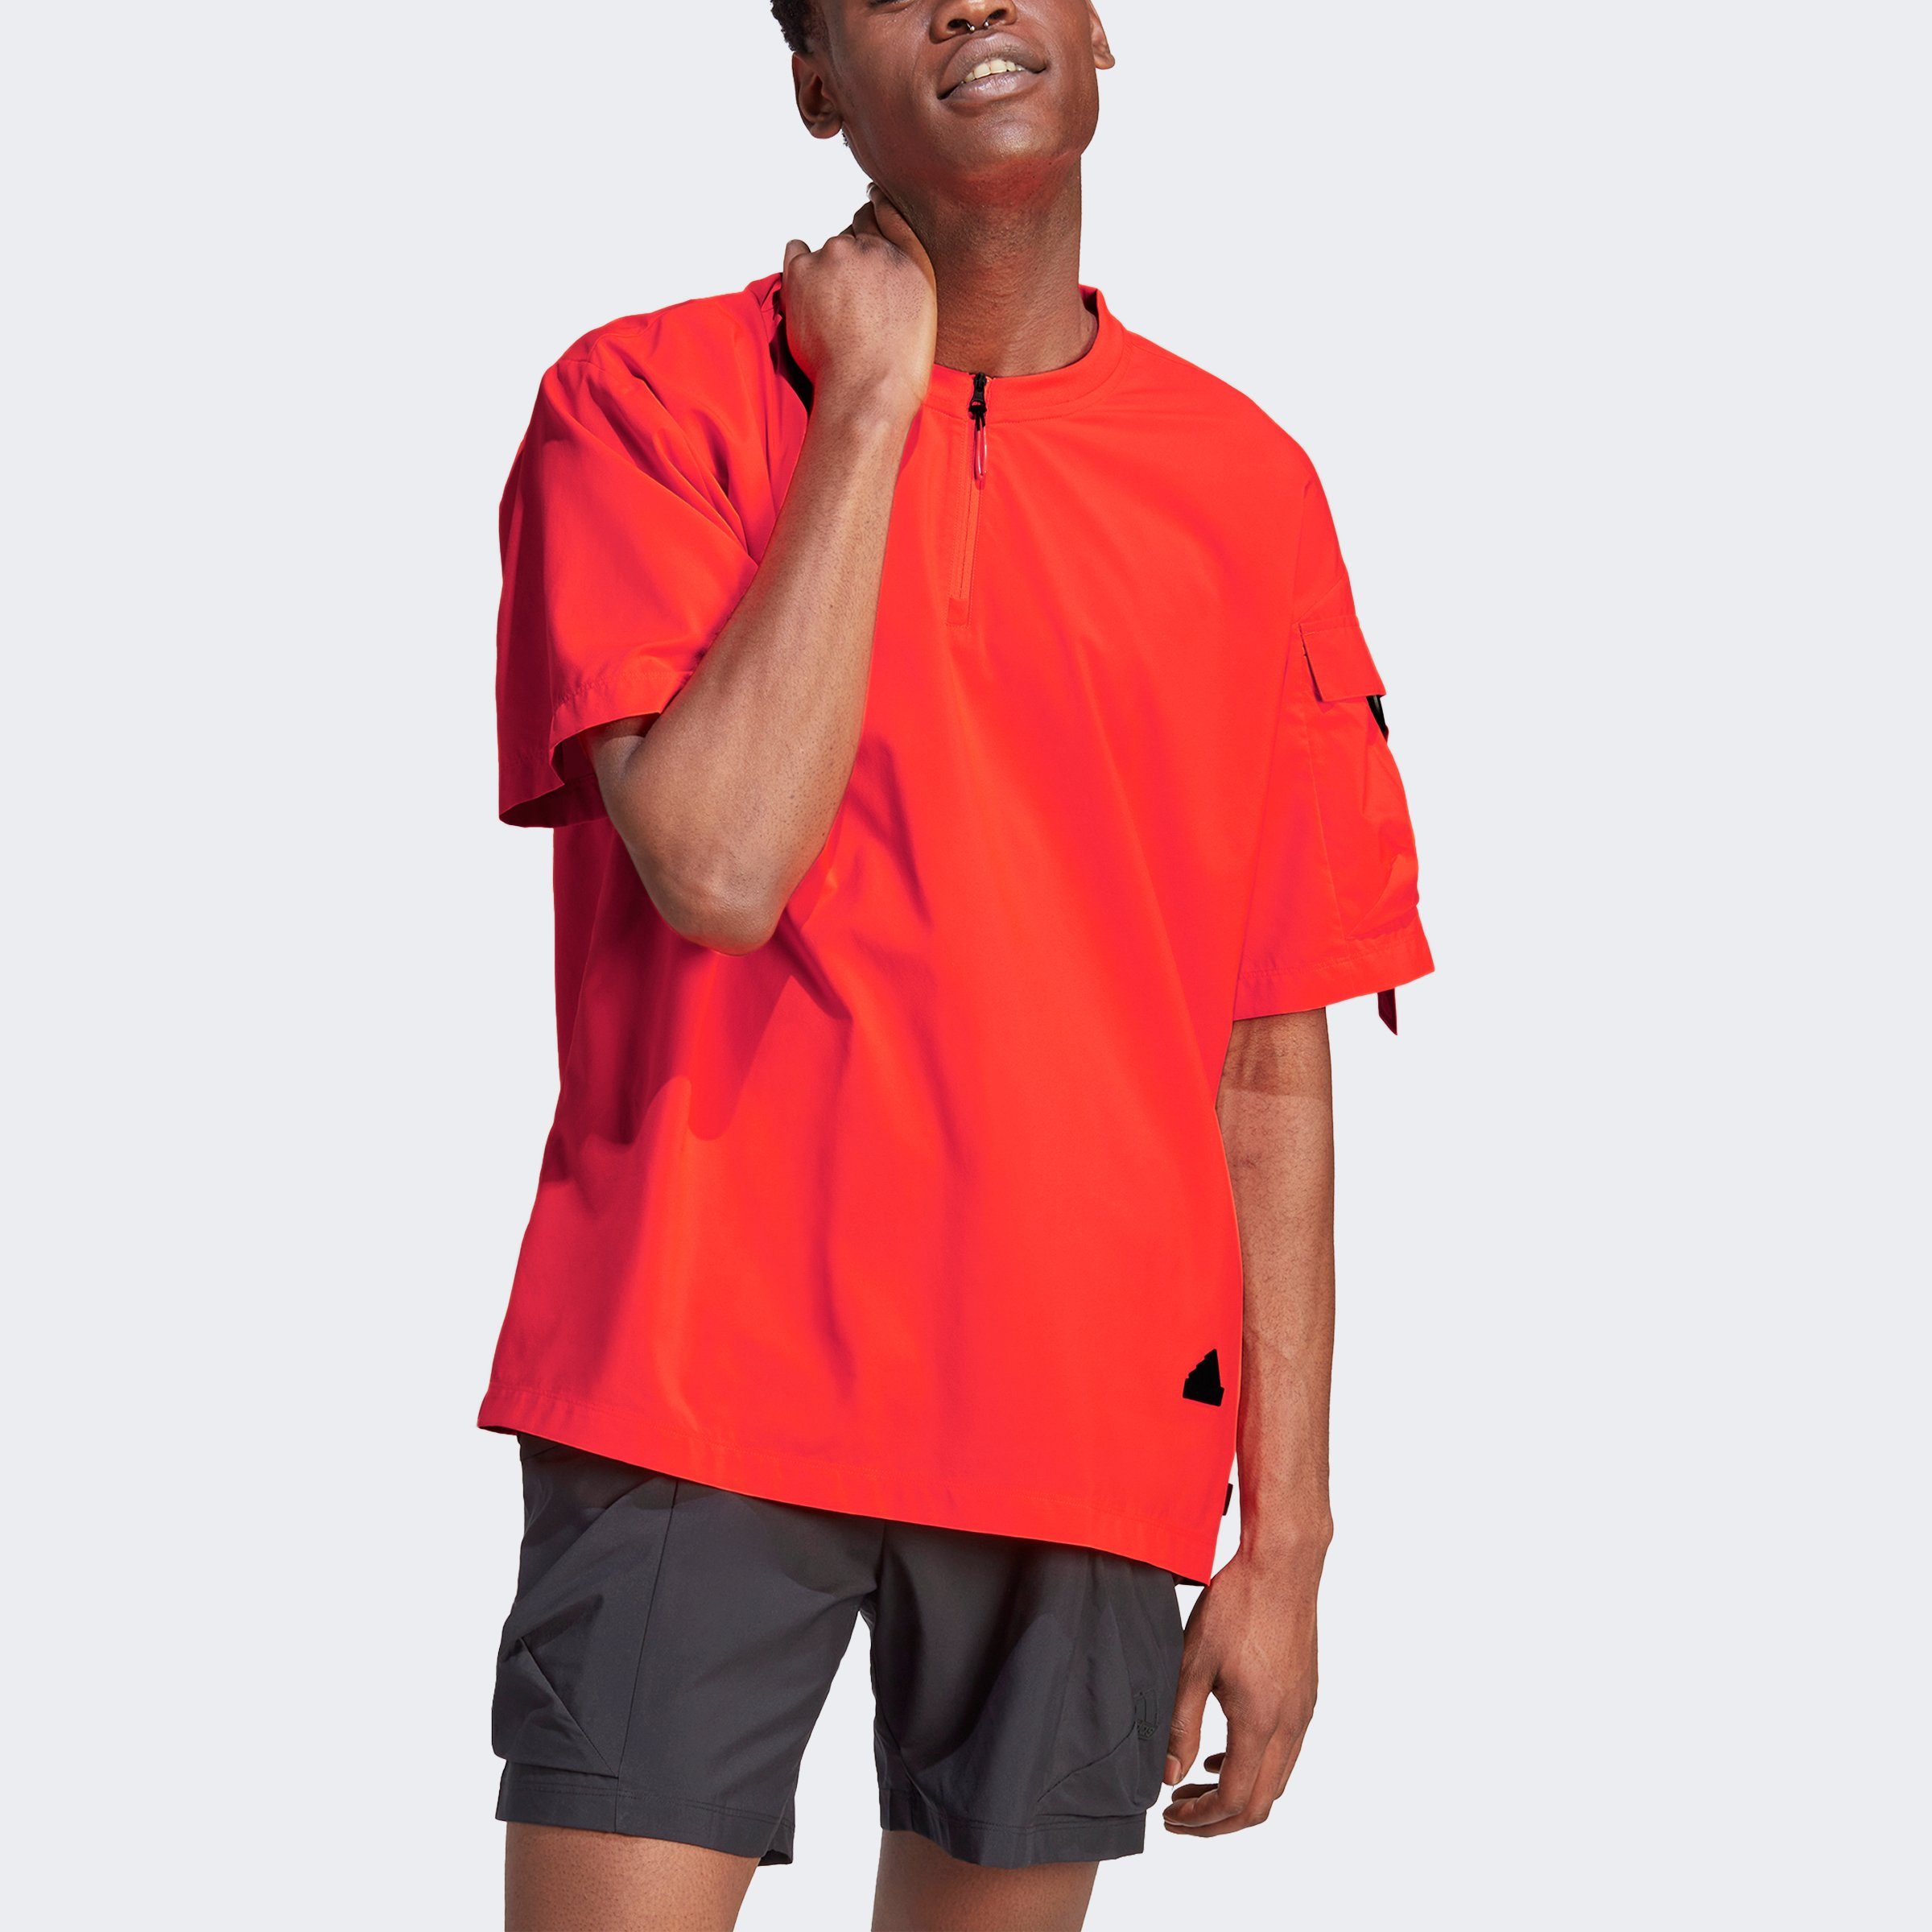 CITY Solar ESCAPE adidas Red T-Shirt Sportswear